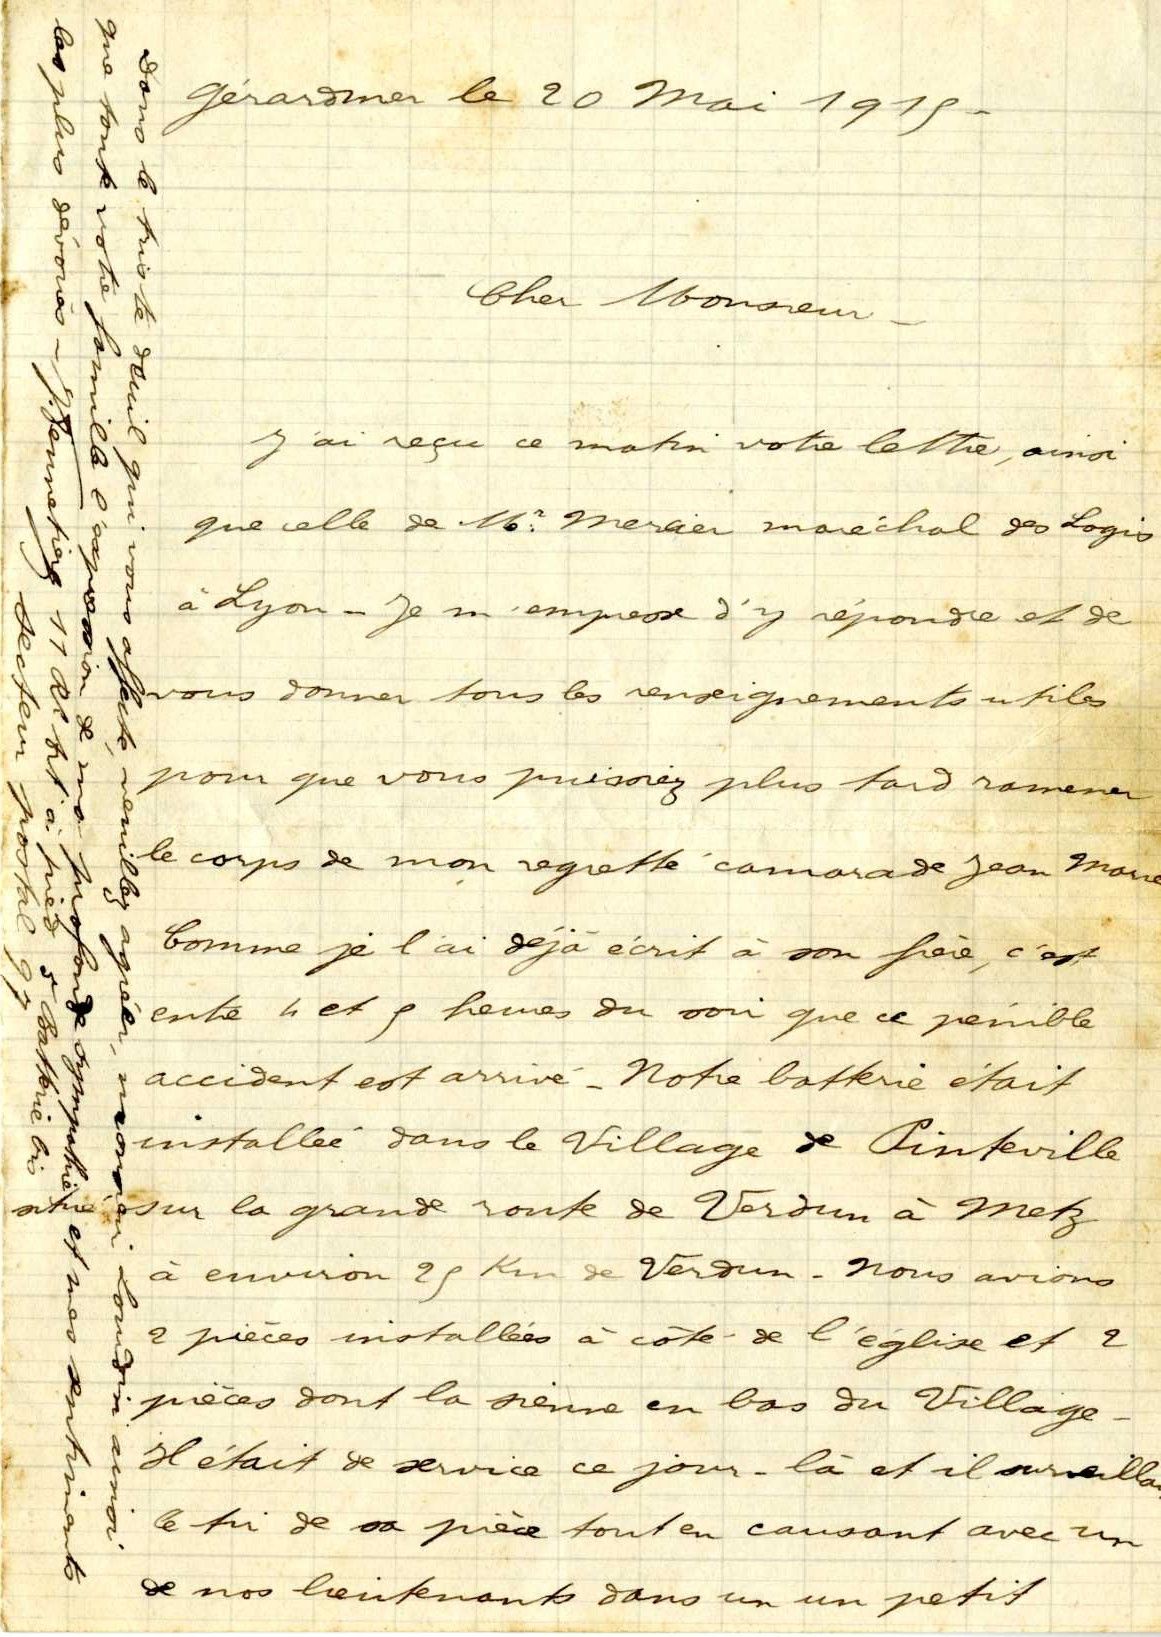 Lettre du 20 mai 1915 relatant les circonstances du décès de J-M Mercier